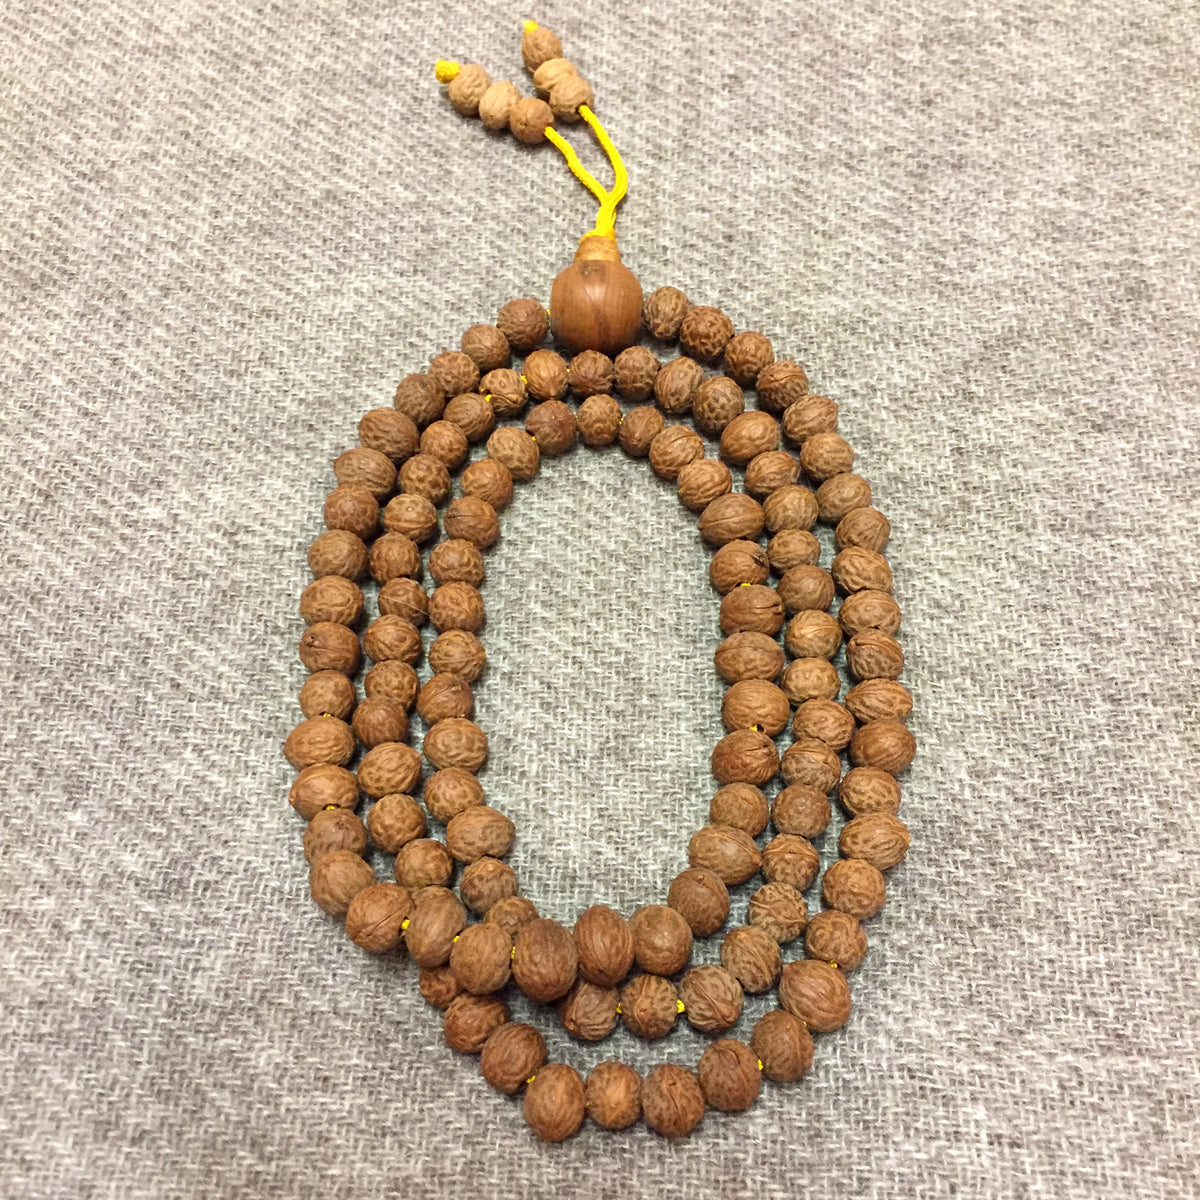 Mala Beads - BODHI SEED – Himalayan Creation